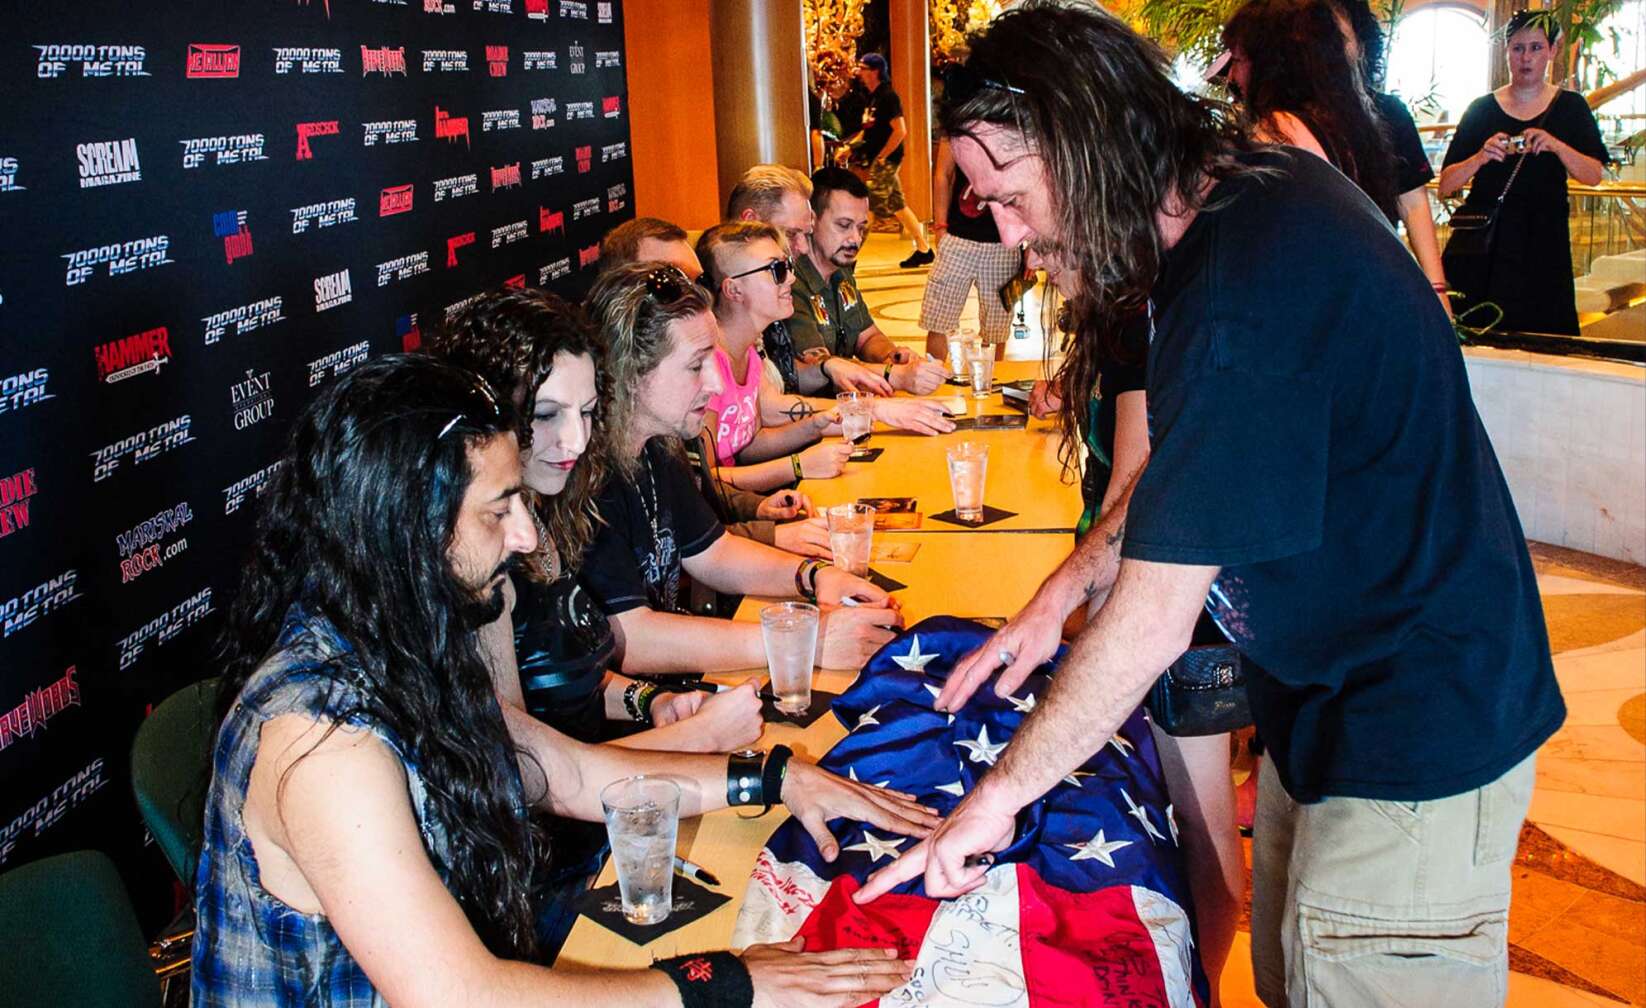 Bilder der 70000 Tons of Metal - Beim Meet & Greet unterschreibt die Band eine amerikansiche Flagge